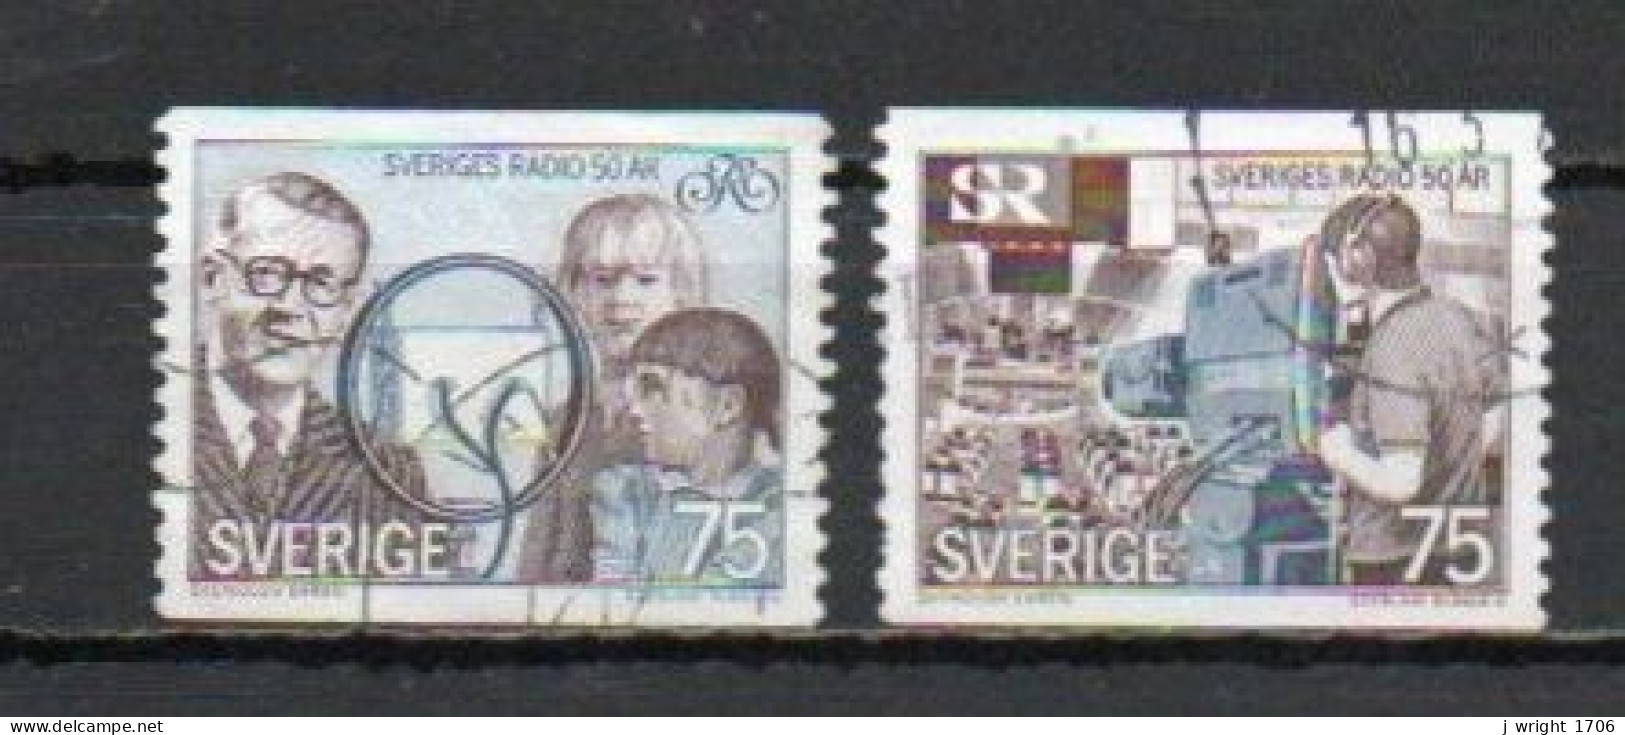 Sweden, 1974, Swedish Broadcasting Corporation, Set, USED - Usati